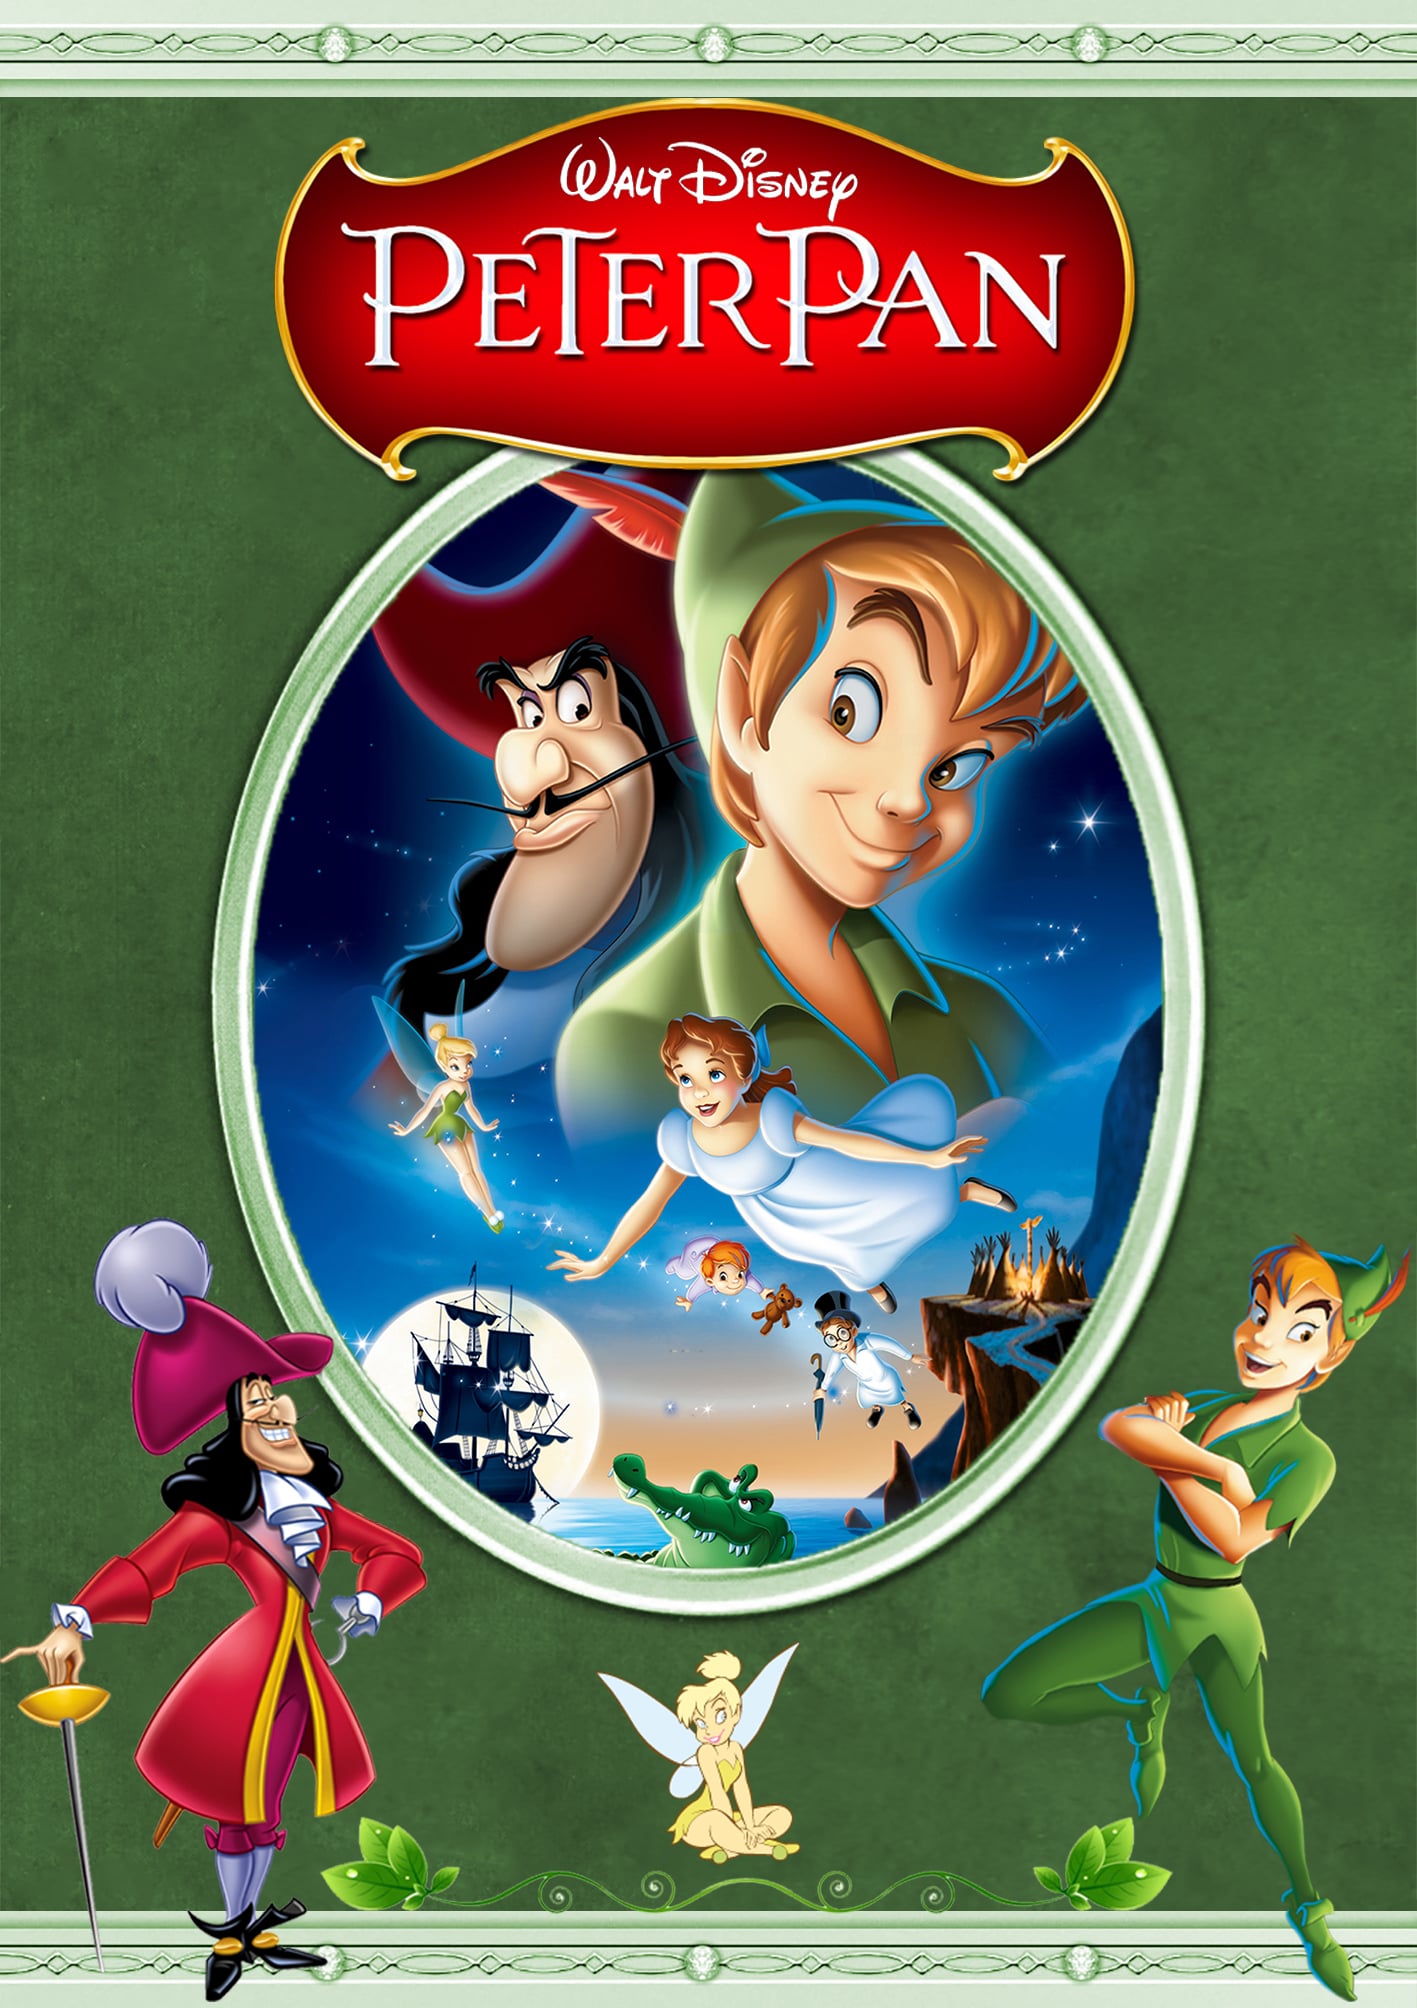 1953 Peter Pan